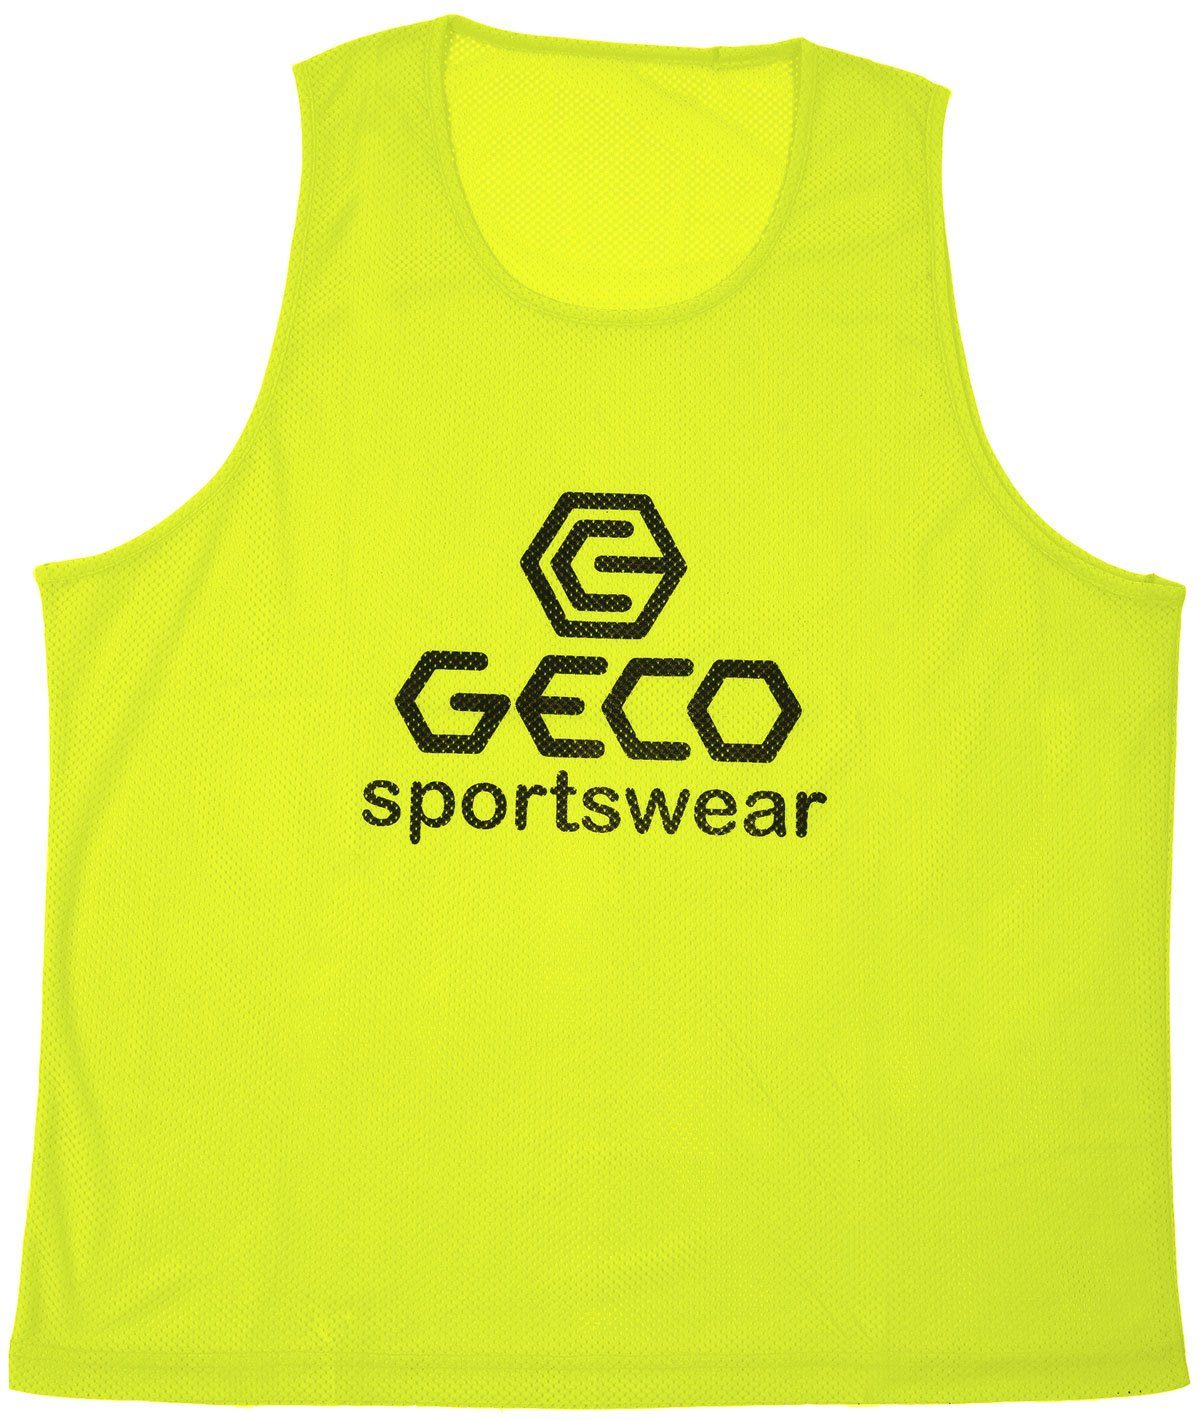 Neon Neon gelb Geco Geco Trainingsleibchen Markierungshemdchen Farben Trainingsleibchen Sportswear